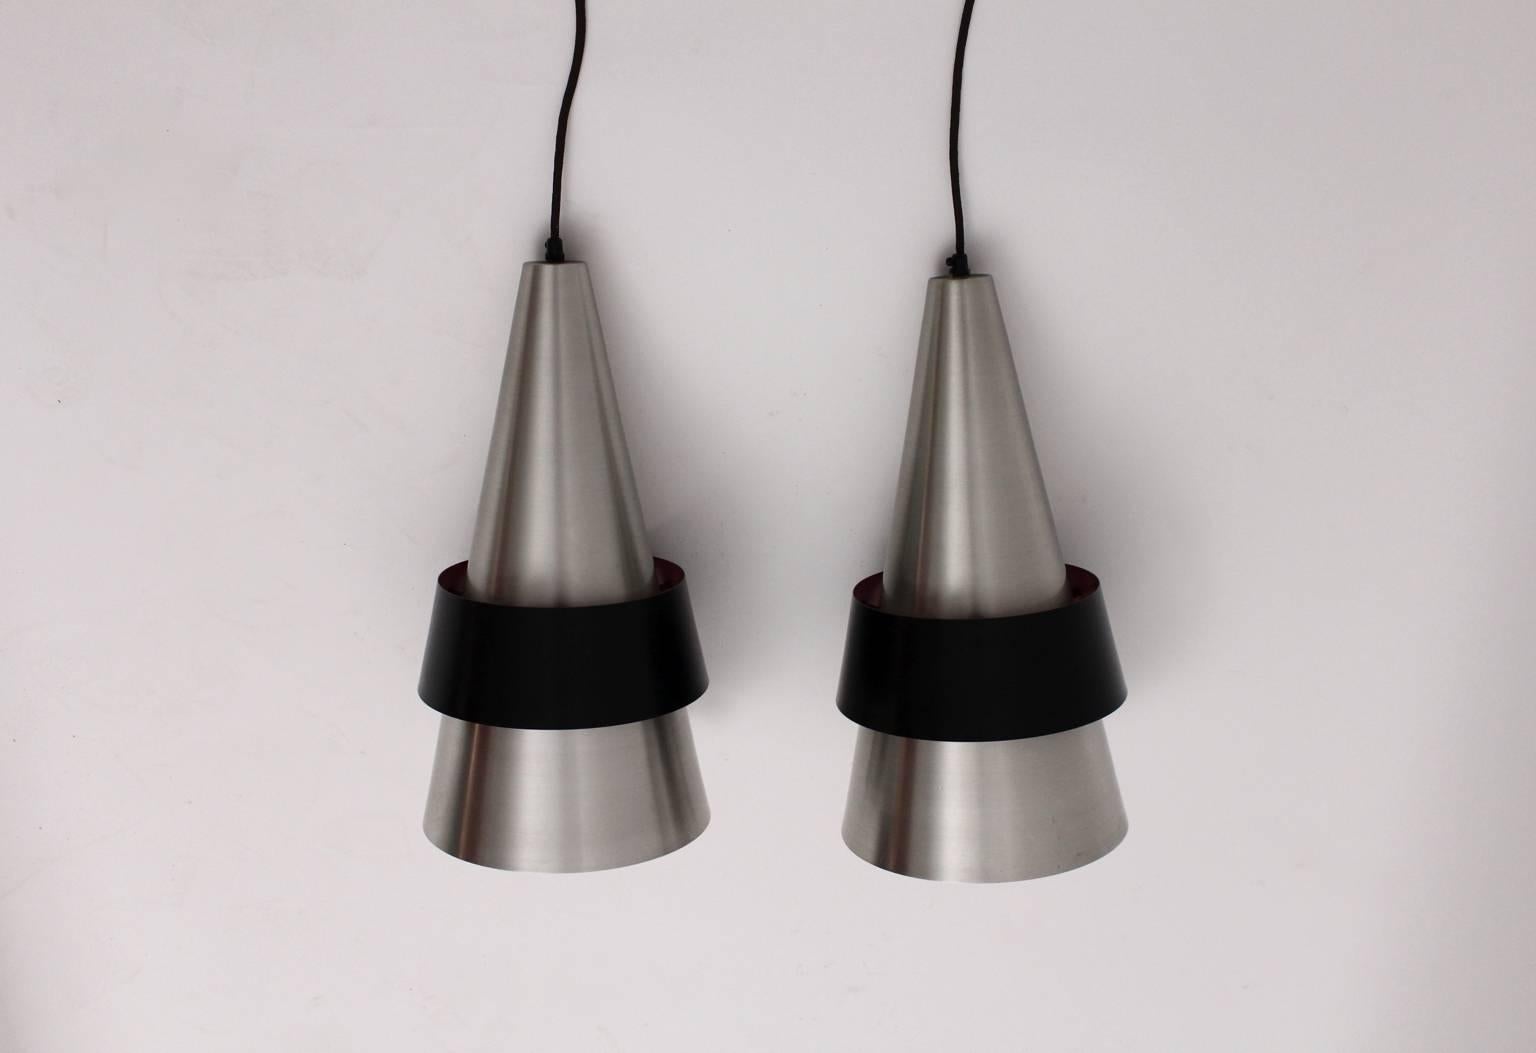 
Das Paar skandinavisch-moderner Vintage-Metall-Hängeleuchten Corona wurde von Jo Hammerborg, Dänemark, in den 1960er Jahren entworfen und von Fog & Morup, Dänemark, ausgeführt.
Auch diese Anhänger wurden aus rostfreiem Stahl und mit Kunststoff